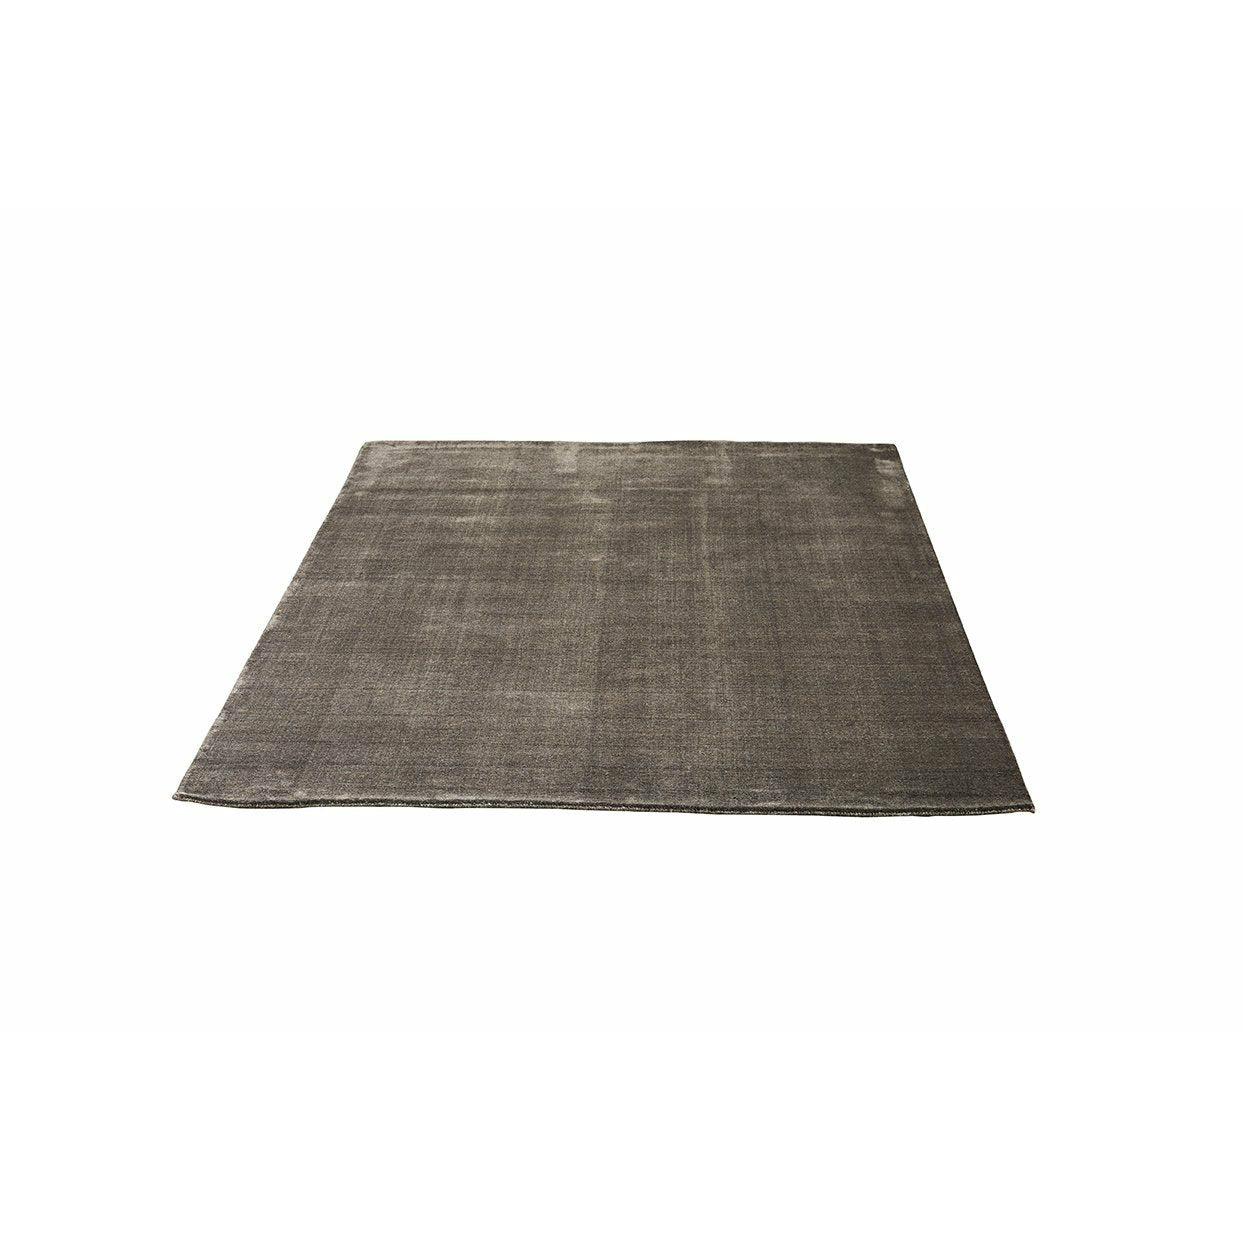 Rapeto de bambu de Massimo Earth, cinza quente, 300x400 cm